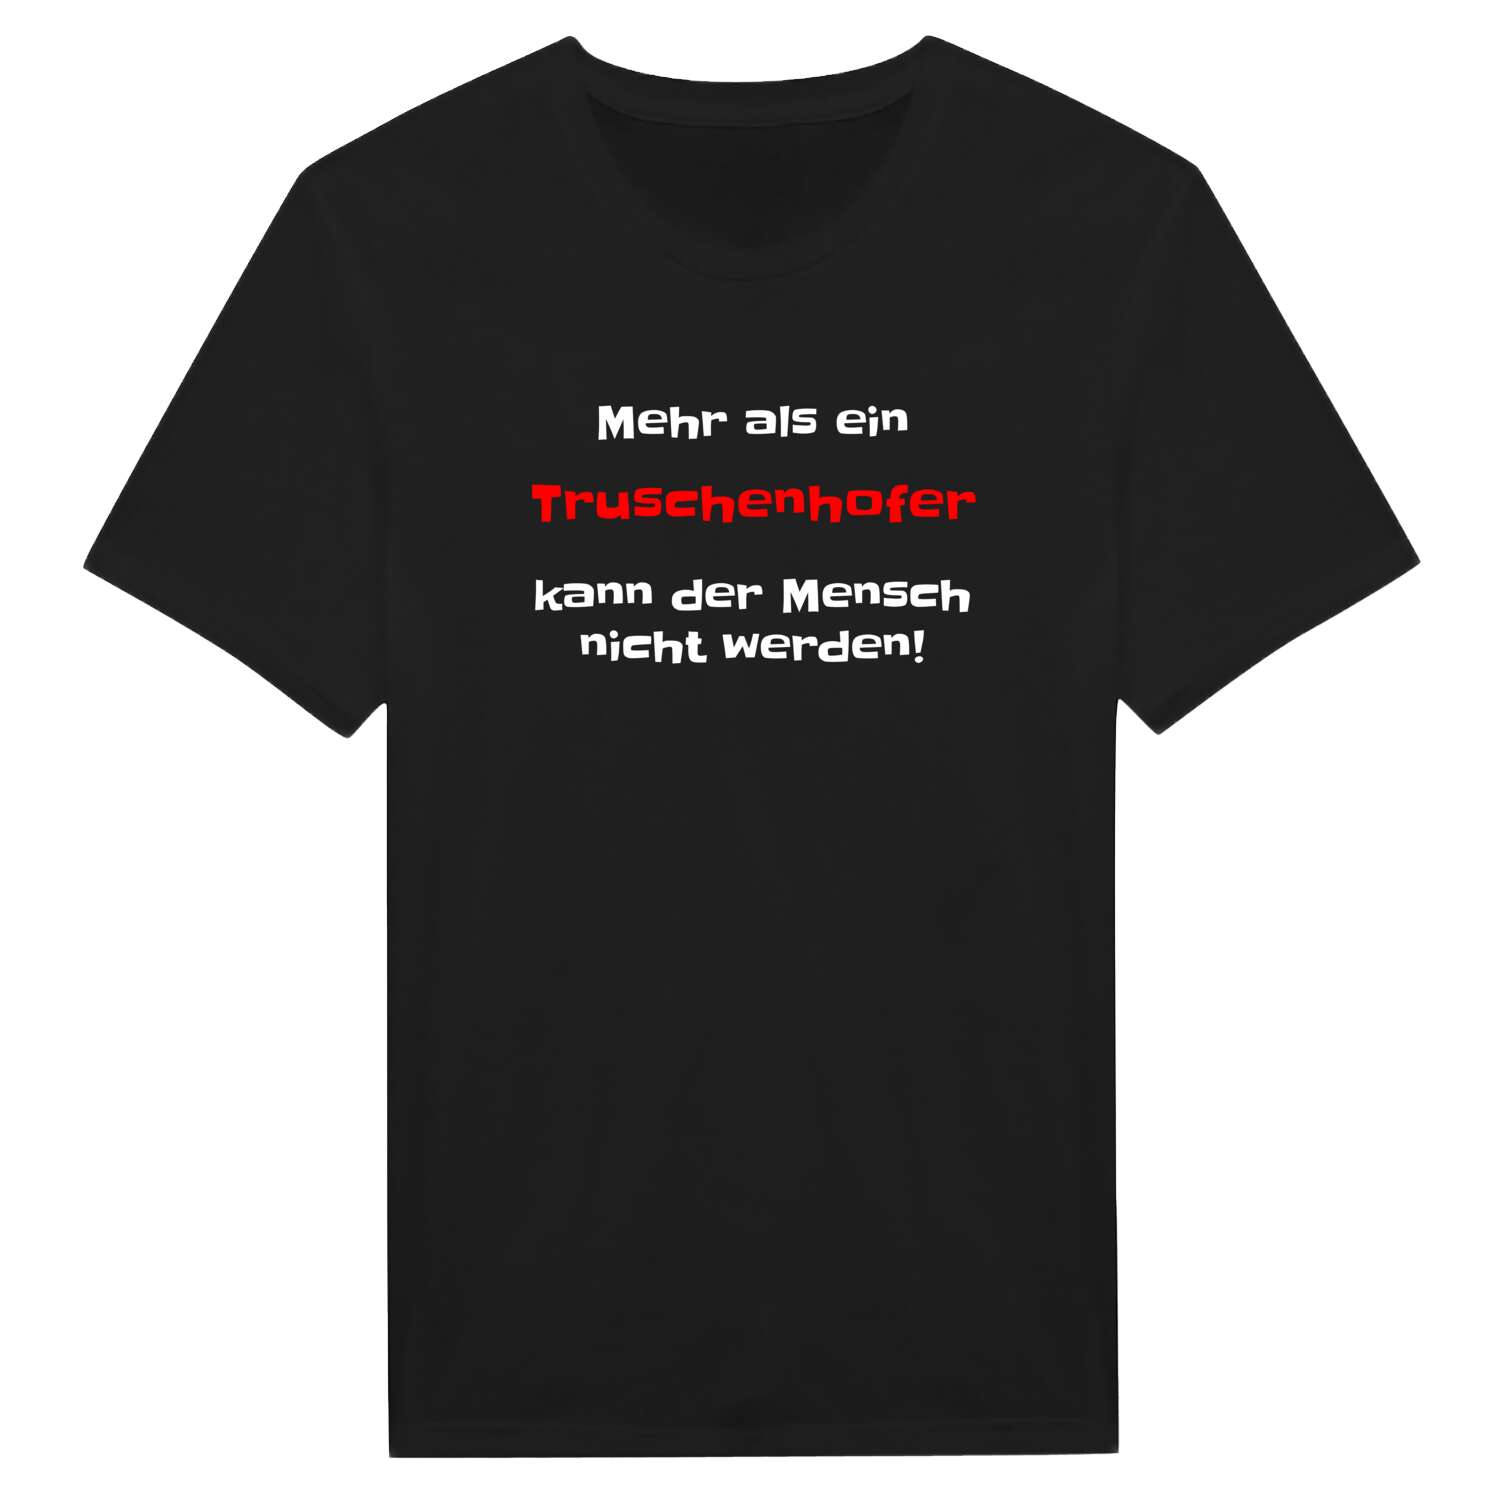 Truschenhof T-Shirt »Mehr als ein«